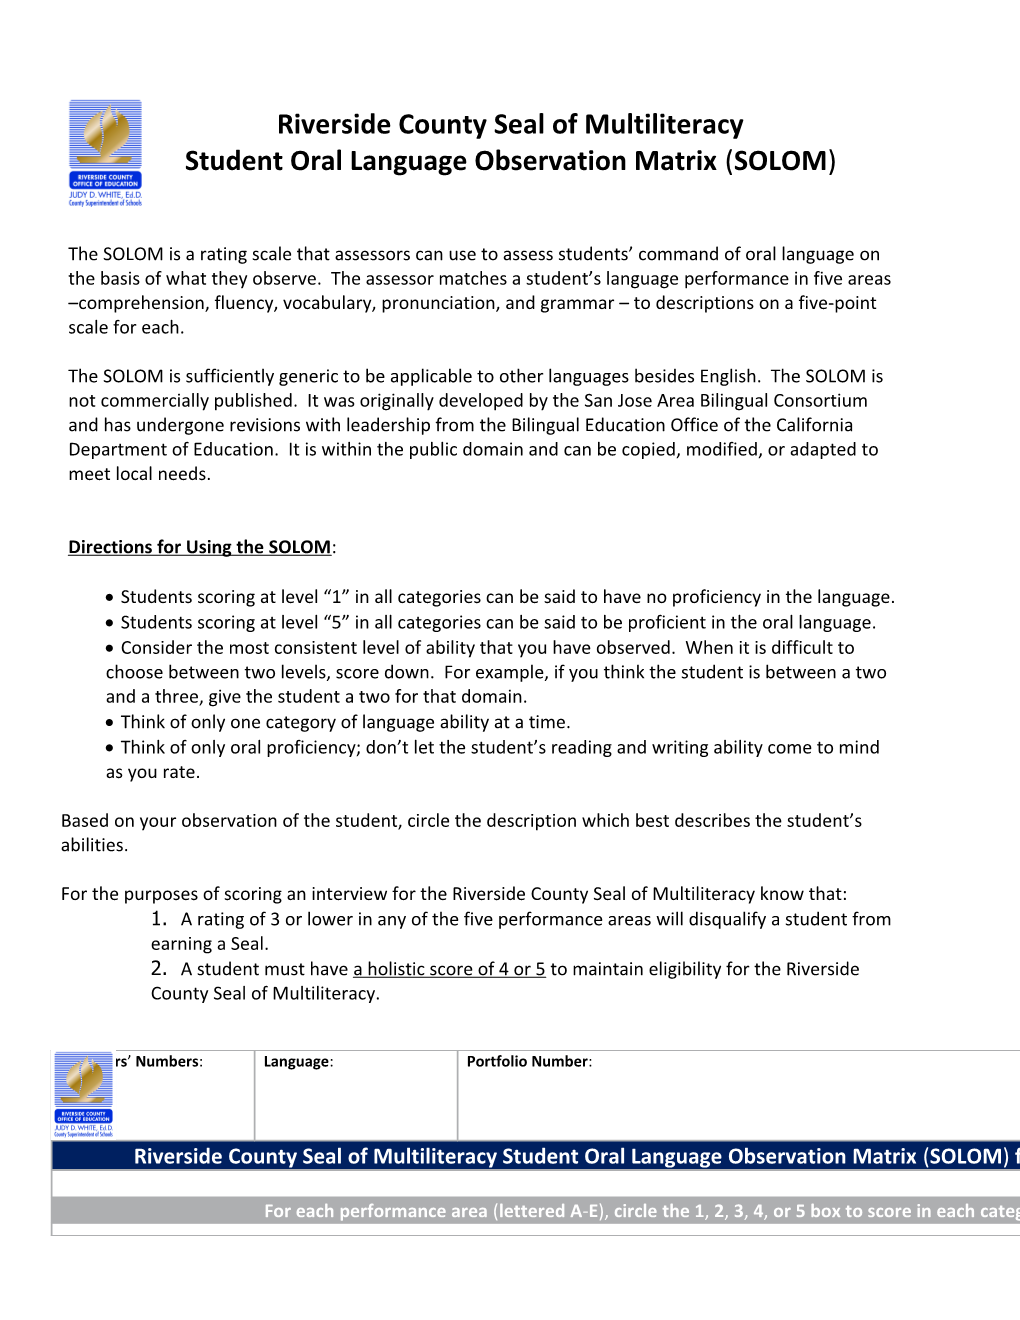 Student Oral Language Observation Matrix (SOLOM)